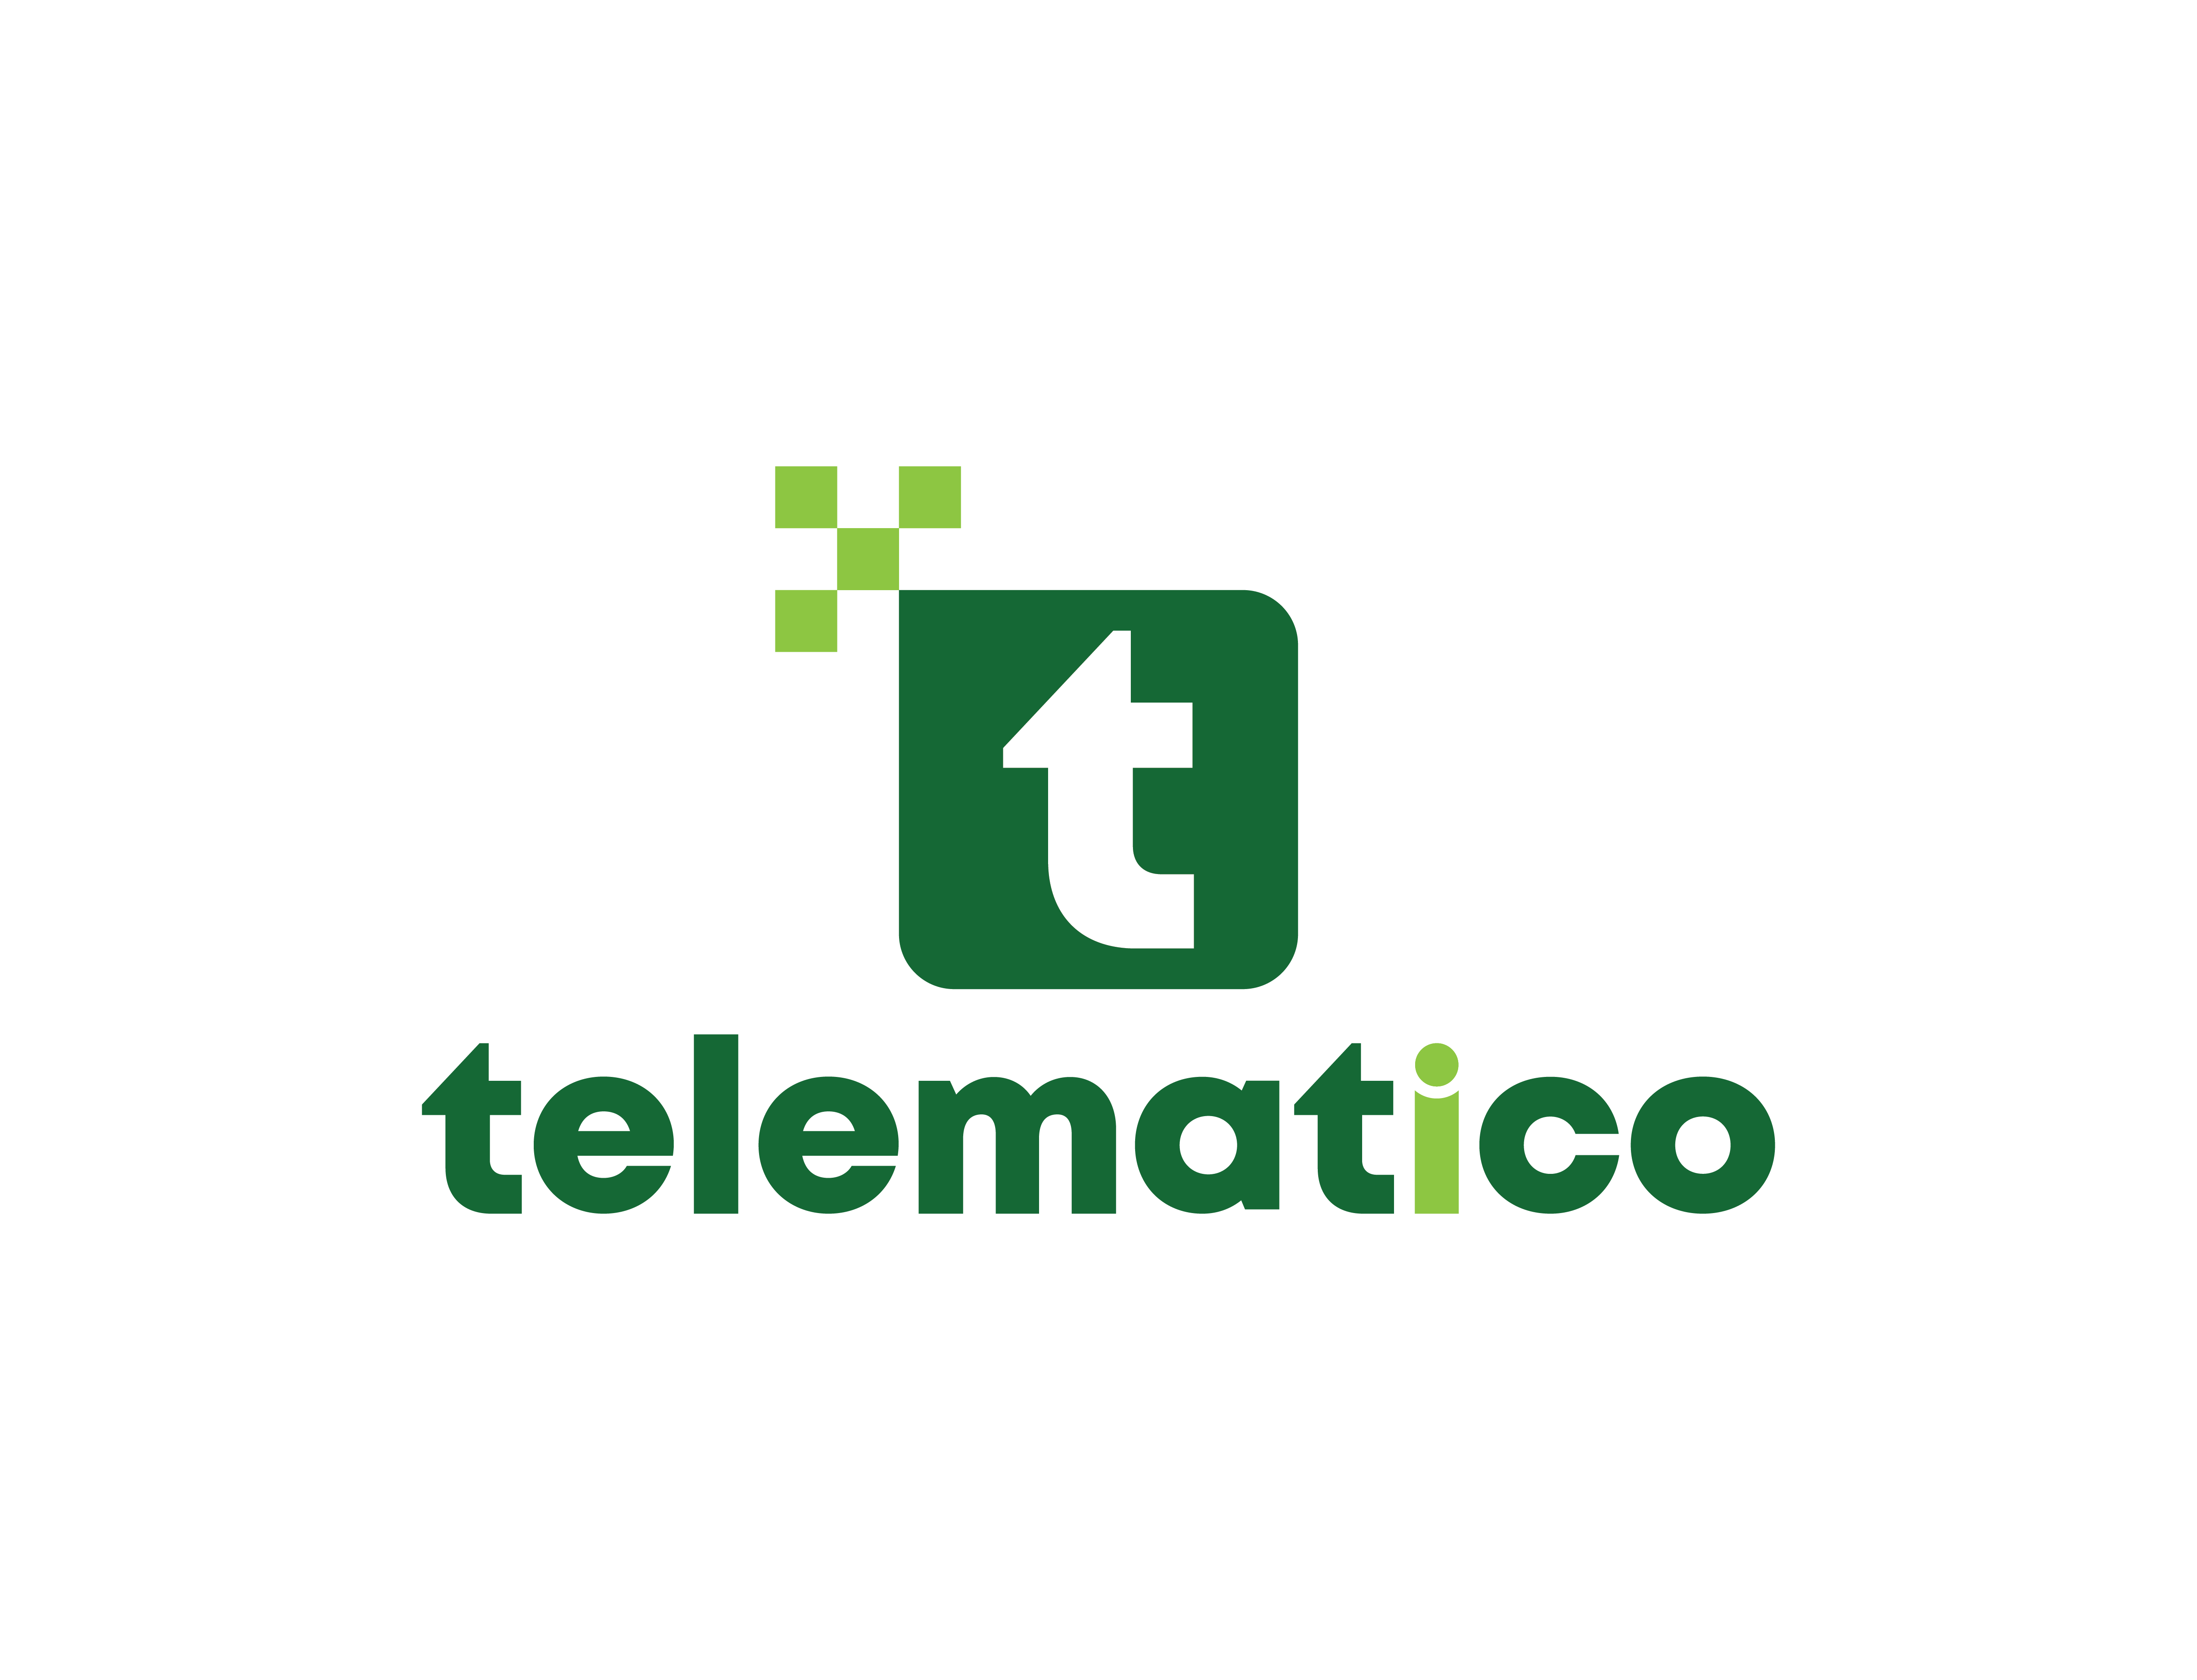 Telematico Corporation in Elioplus